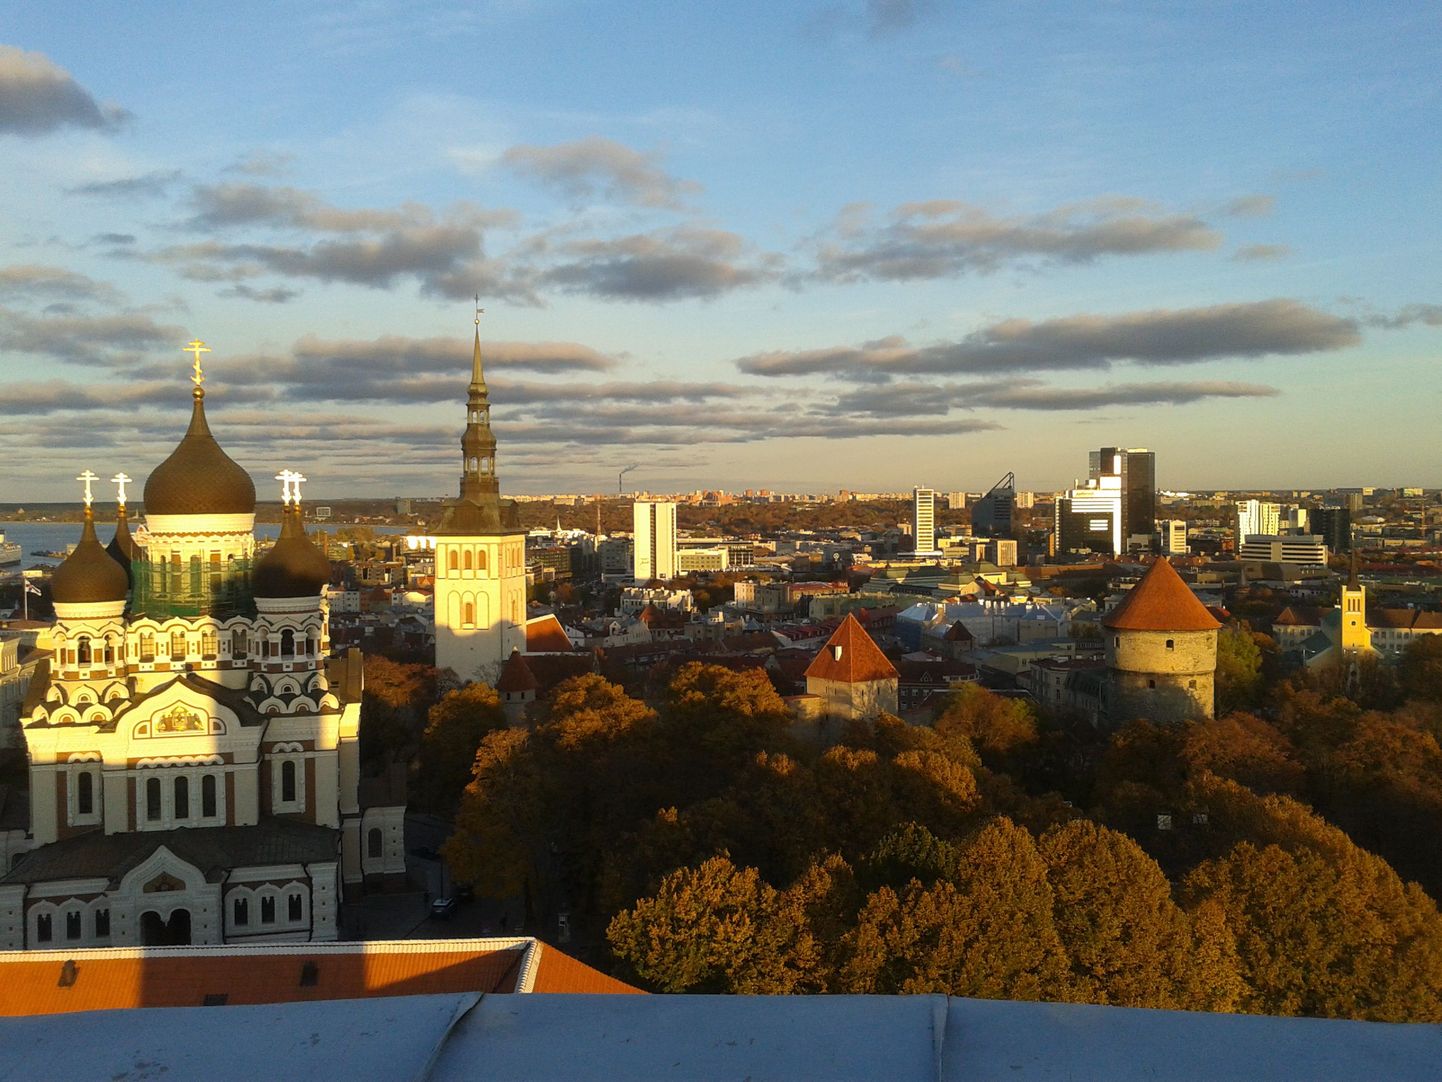 Vaade Pika Hermanni tornist. Kadrina vallavolikogu külastas Toompeal ka seda ajaloolist ja Eesti riigile tähtsat rajatist.